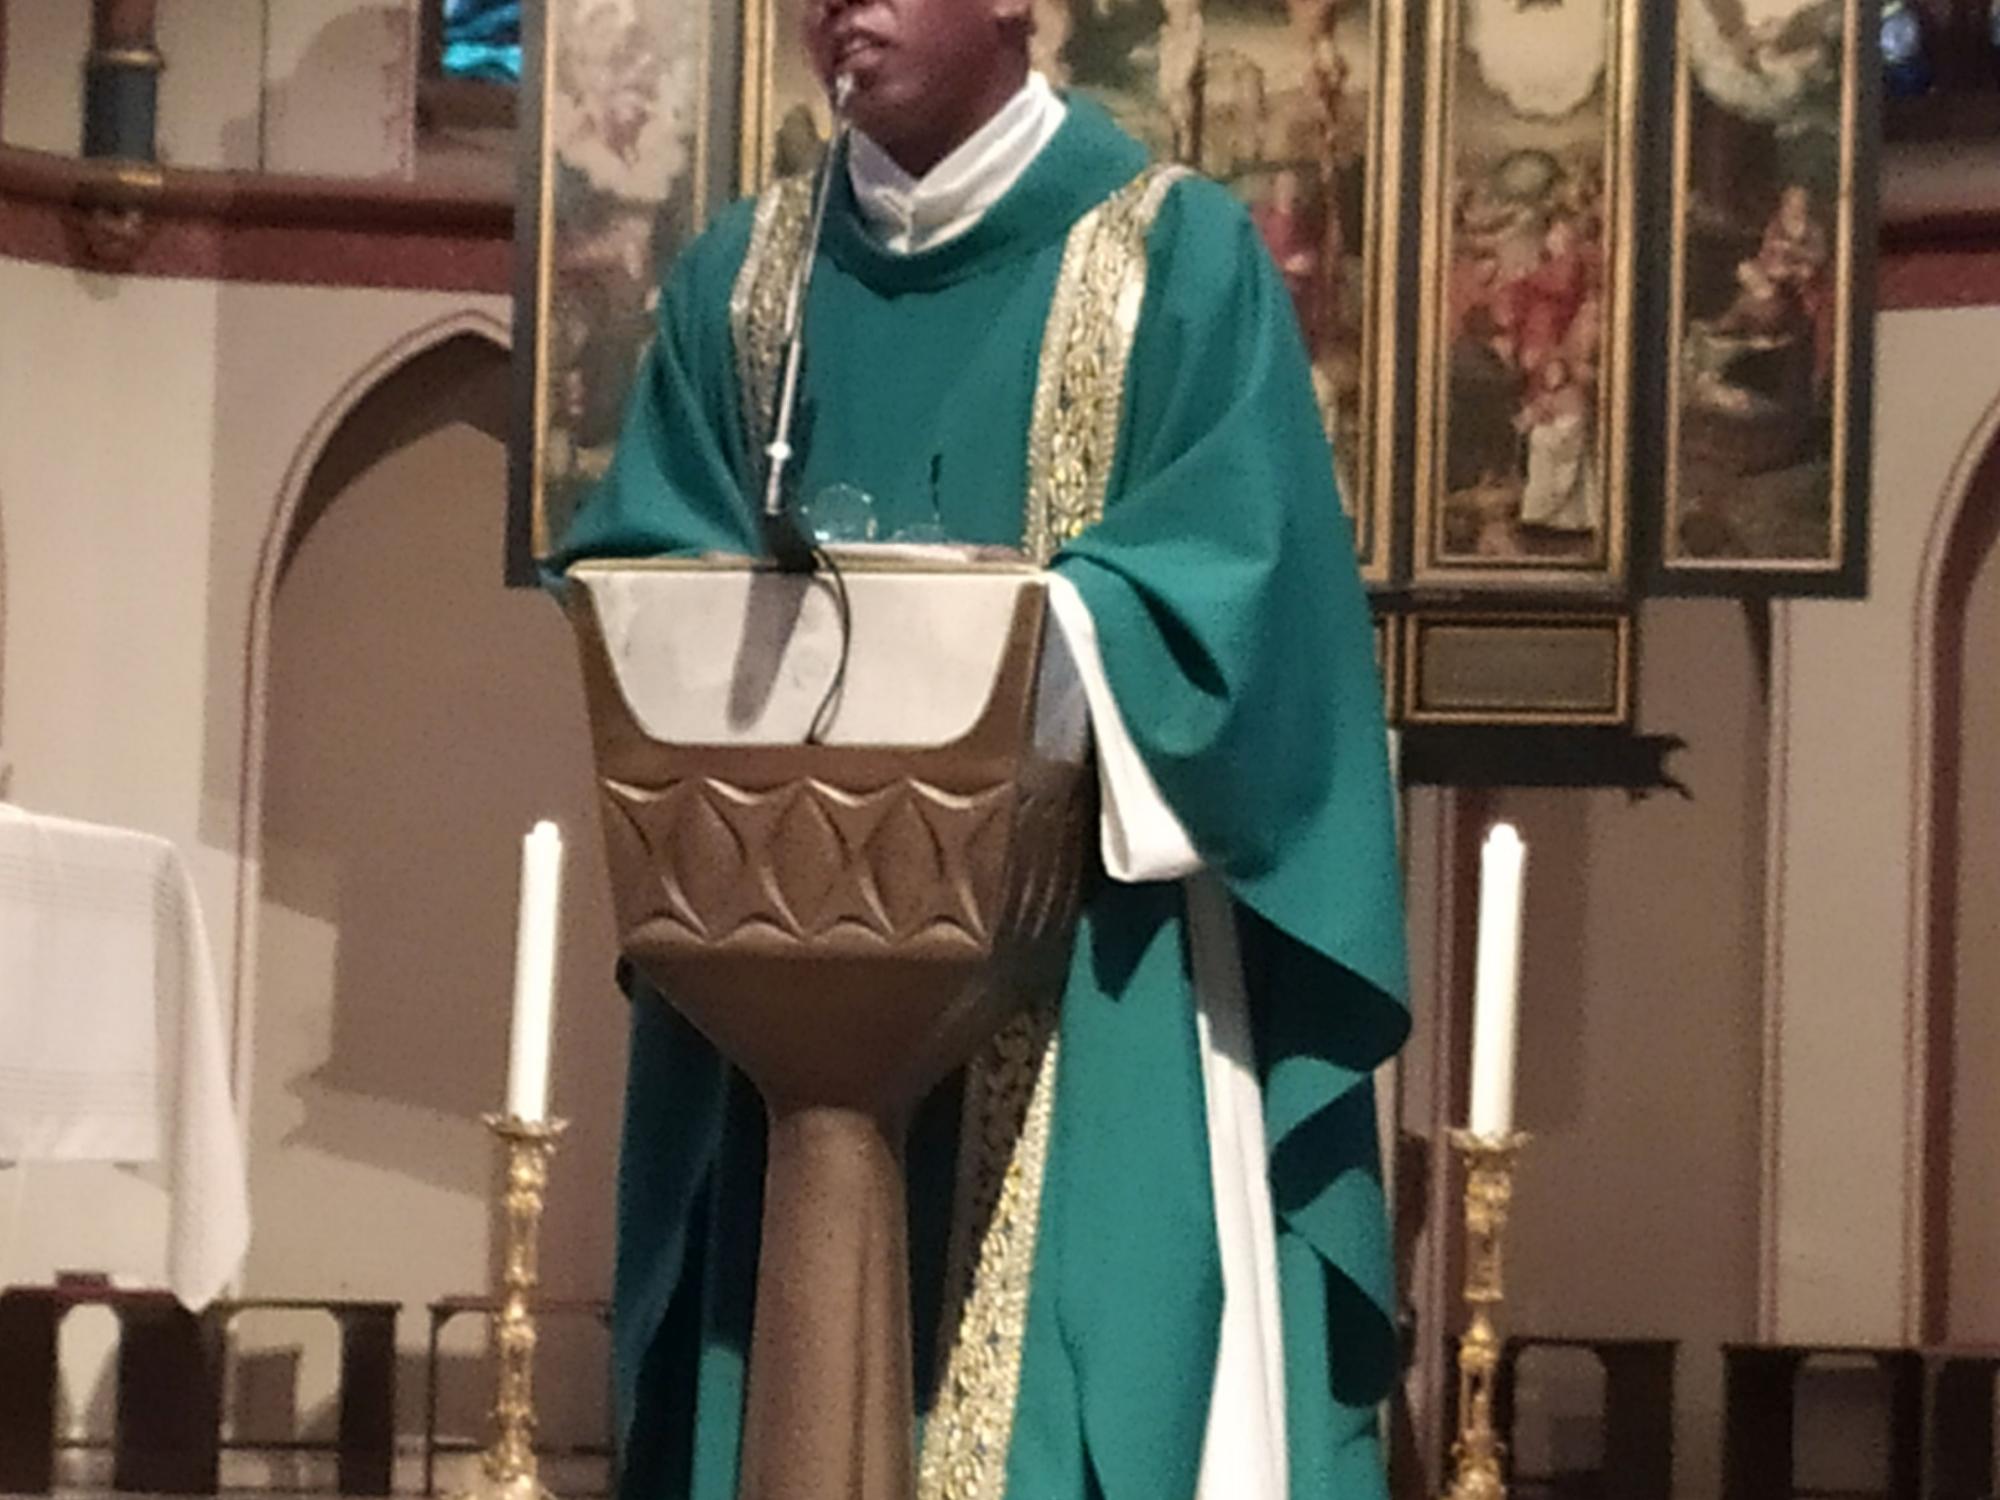 Padre Luis Carlos bei der Sonntagsmesse in St. Donatus, Aachen am 12.9.21